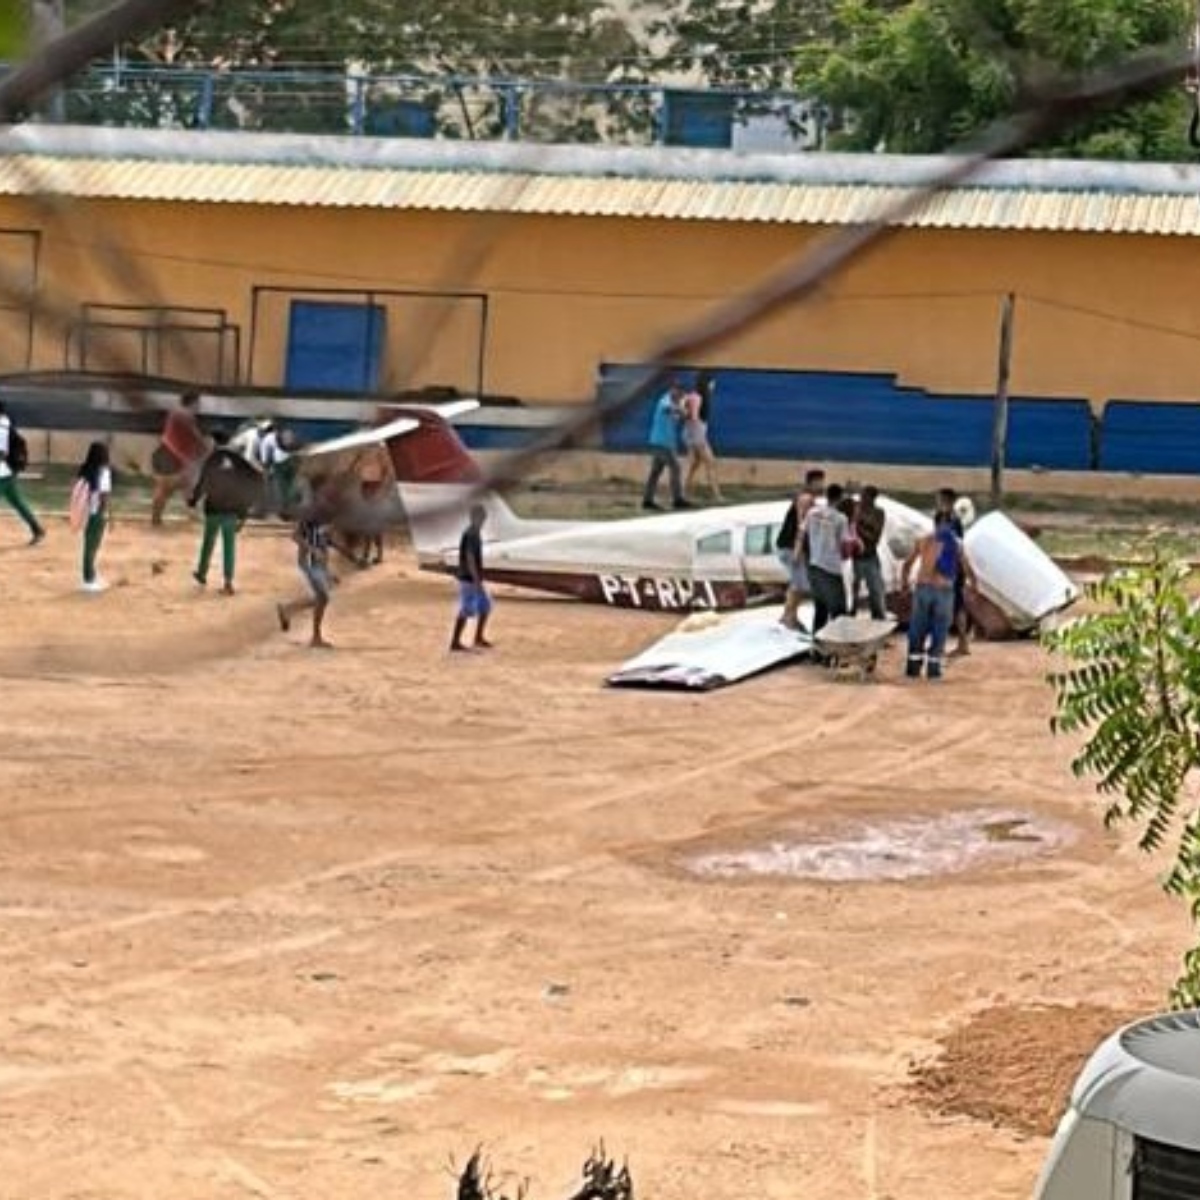  Avião cai em campo de futebol e deixa feridos 